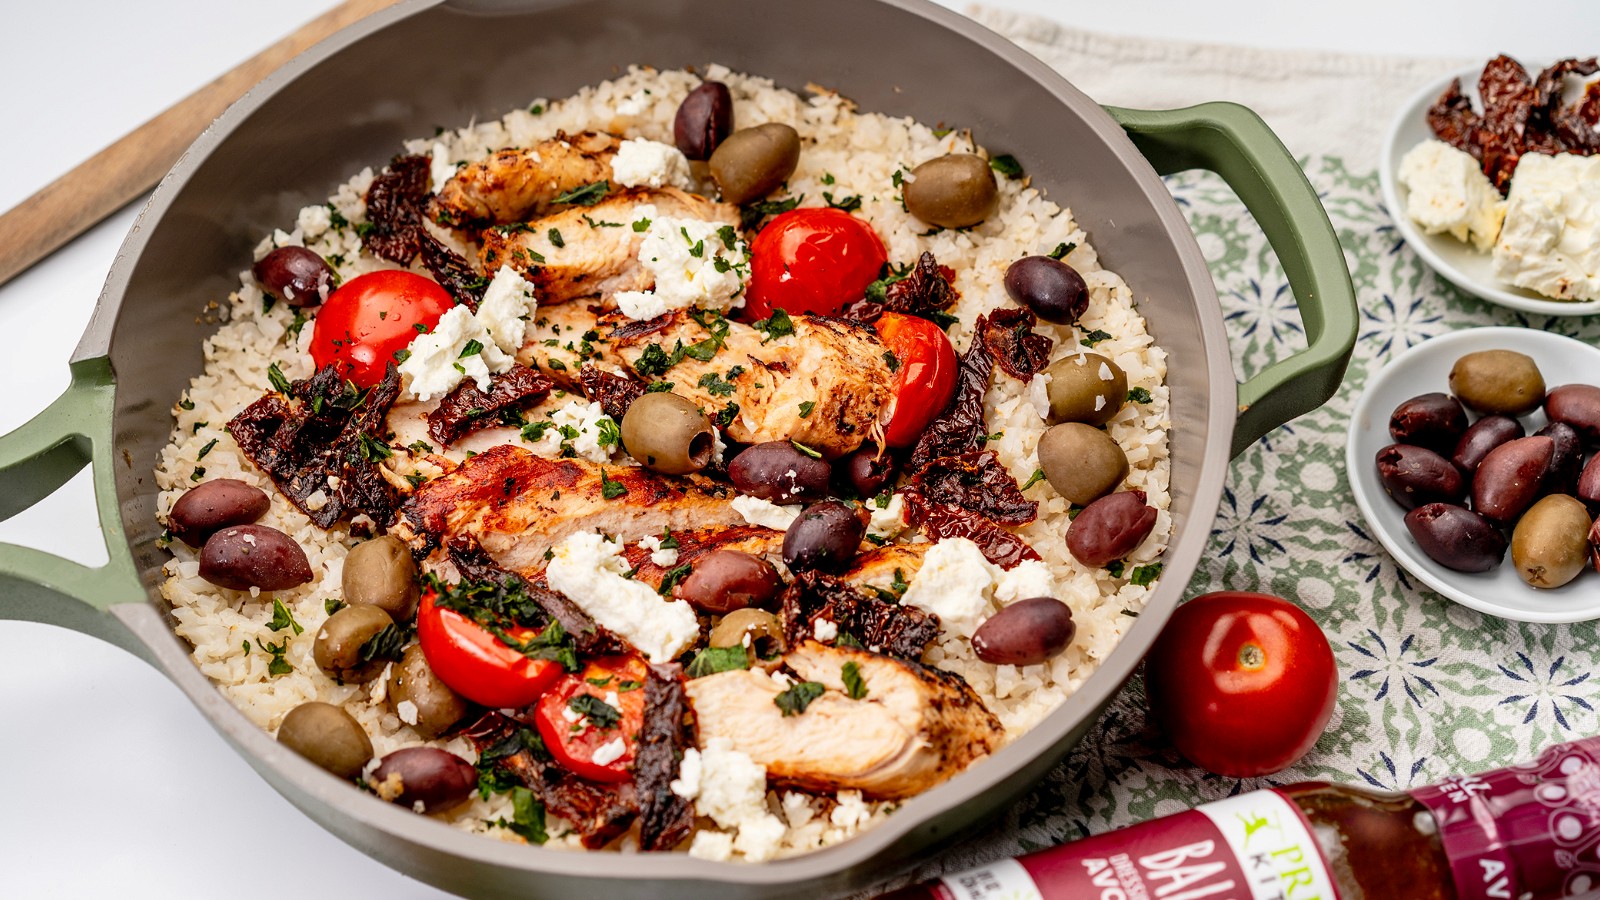 Image of Mediterranean Chicken with Cauliflower Rice